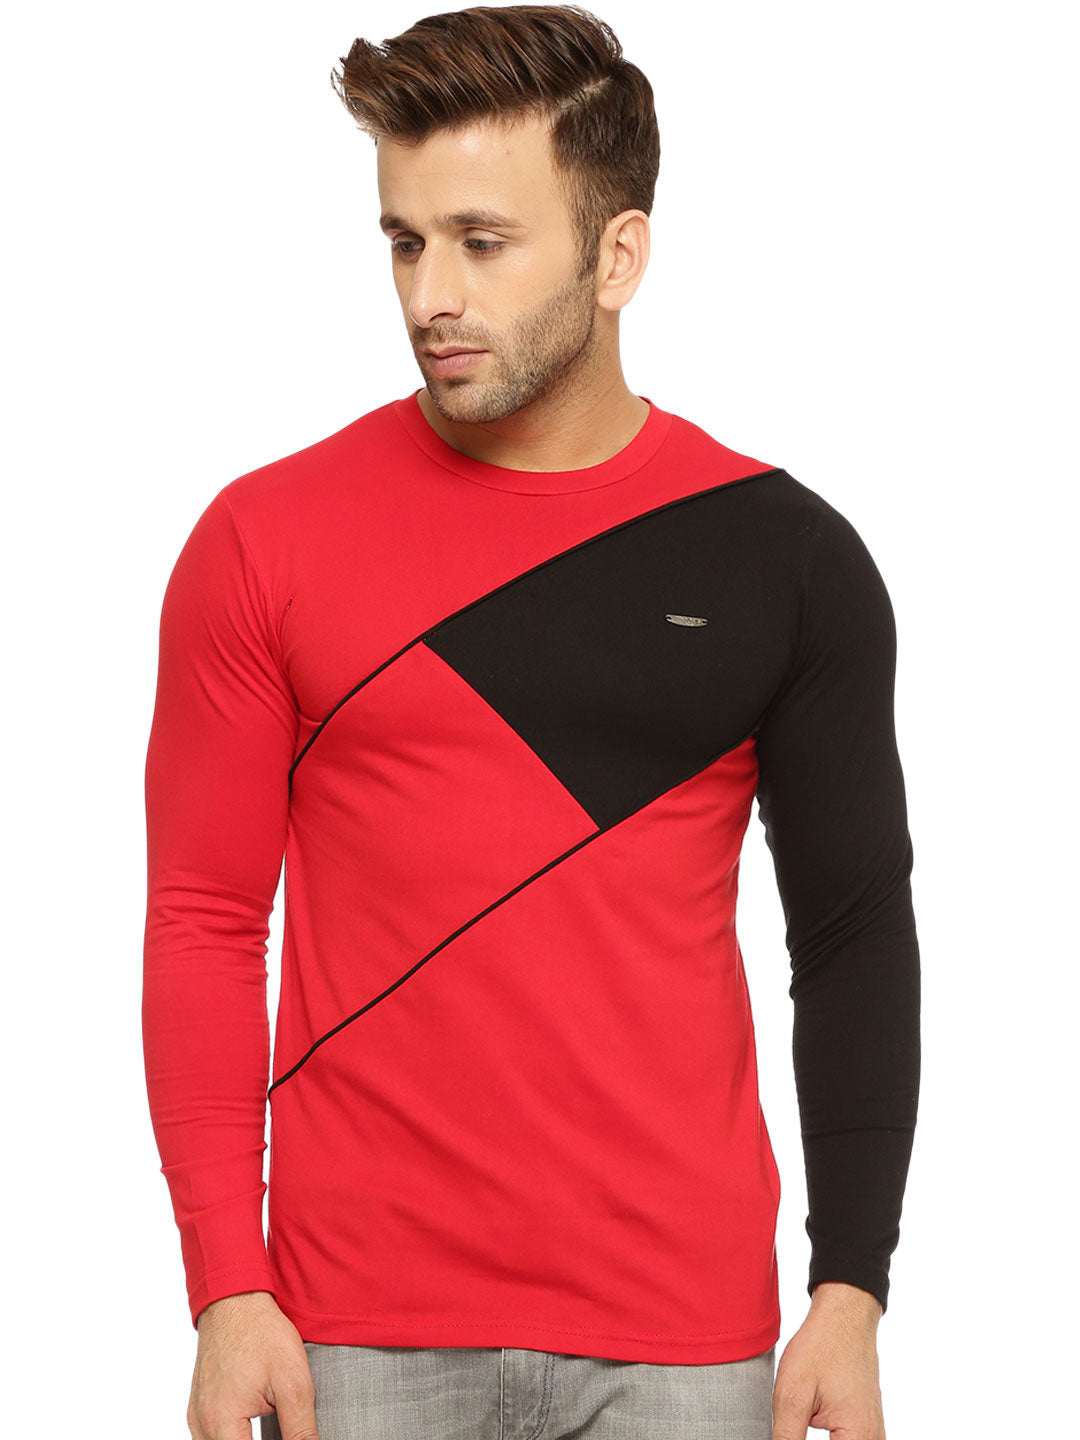 Red/Black  Round Neck T-Shirt